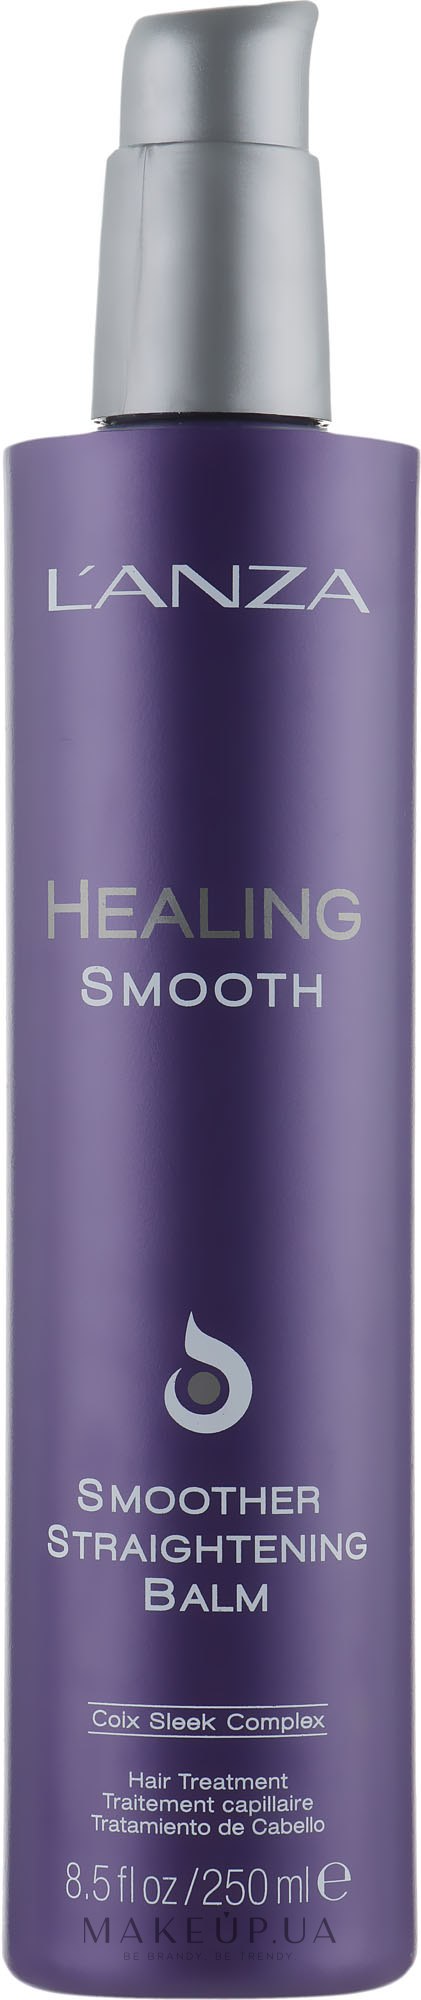 Розгладжувальний термозахисний бальзам для волосся - L'anza Healing Smooth Smoother Straightening Balm — фото 250ml